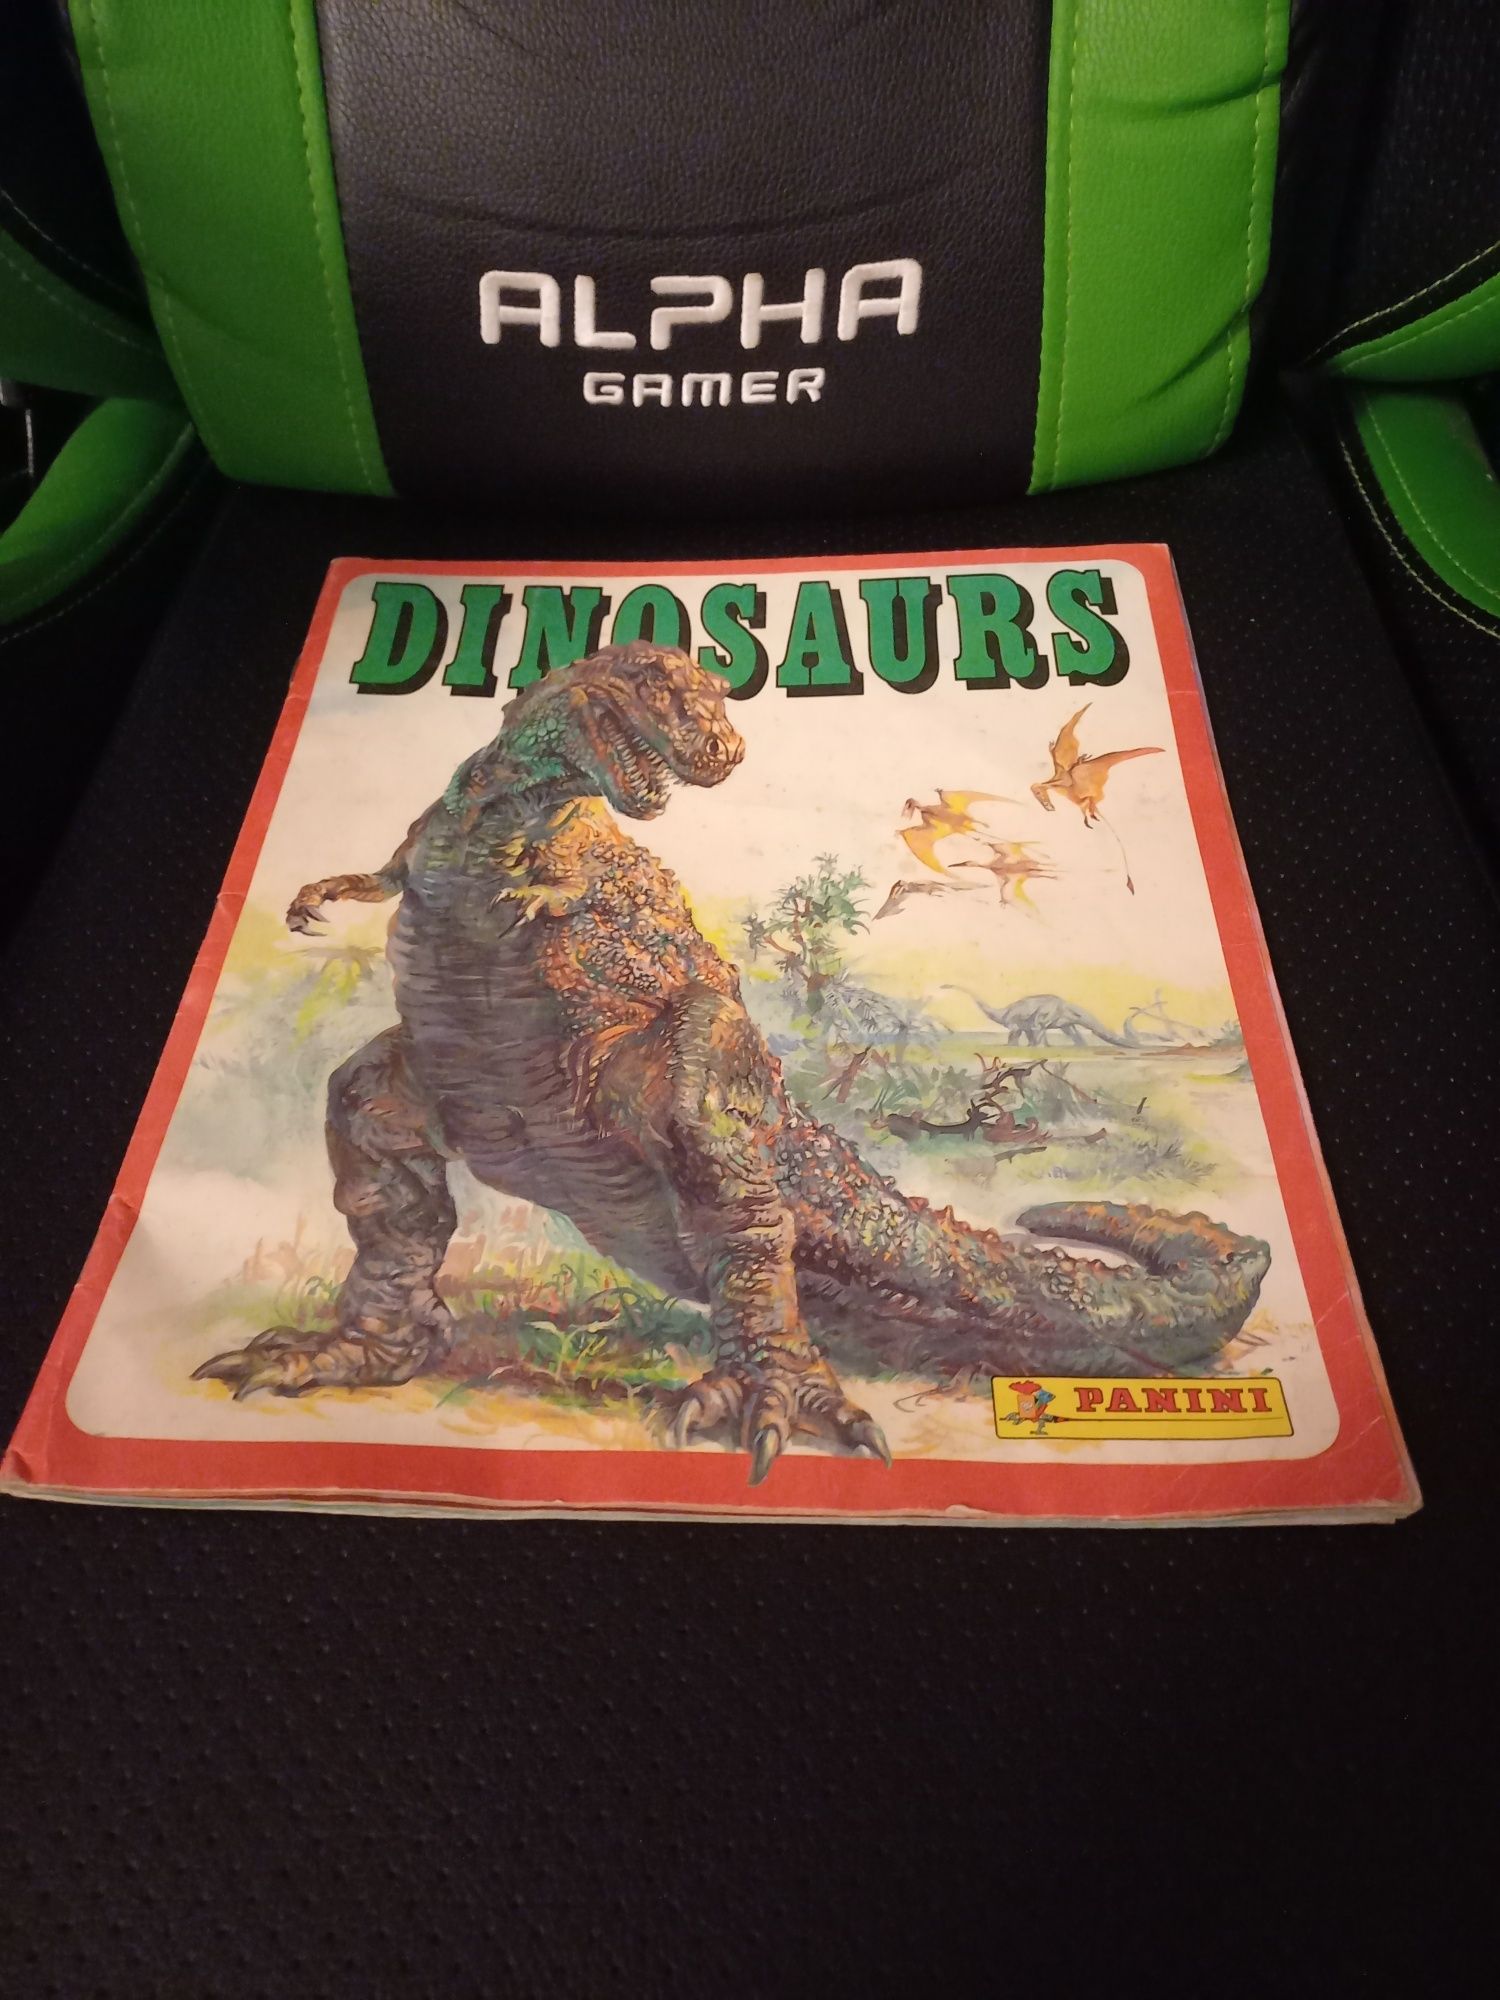 Caderneta Dinosaurs